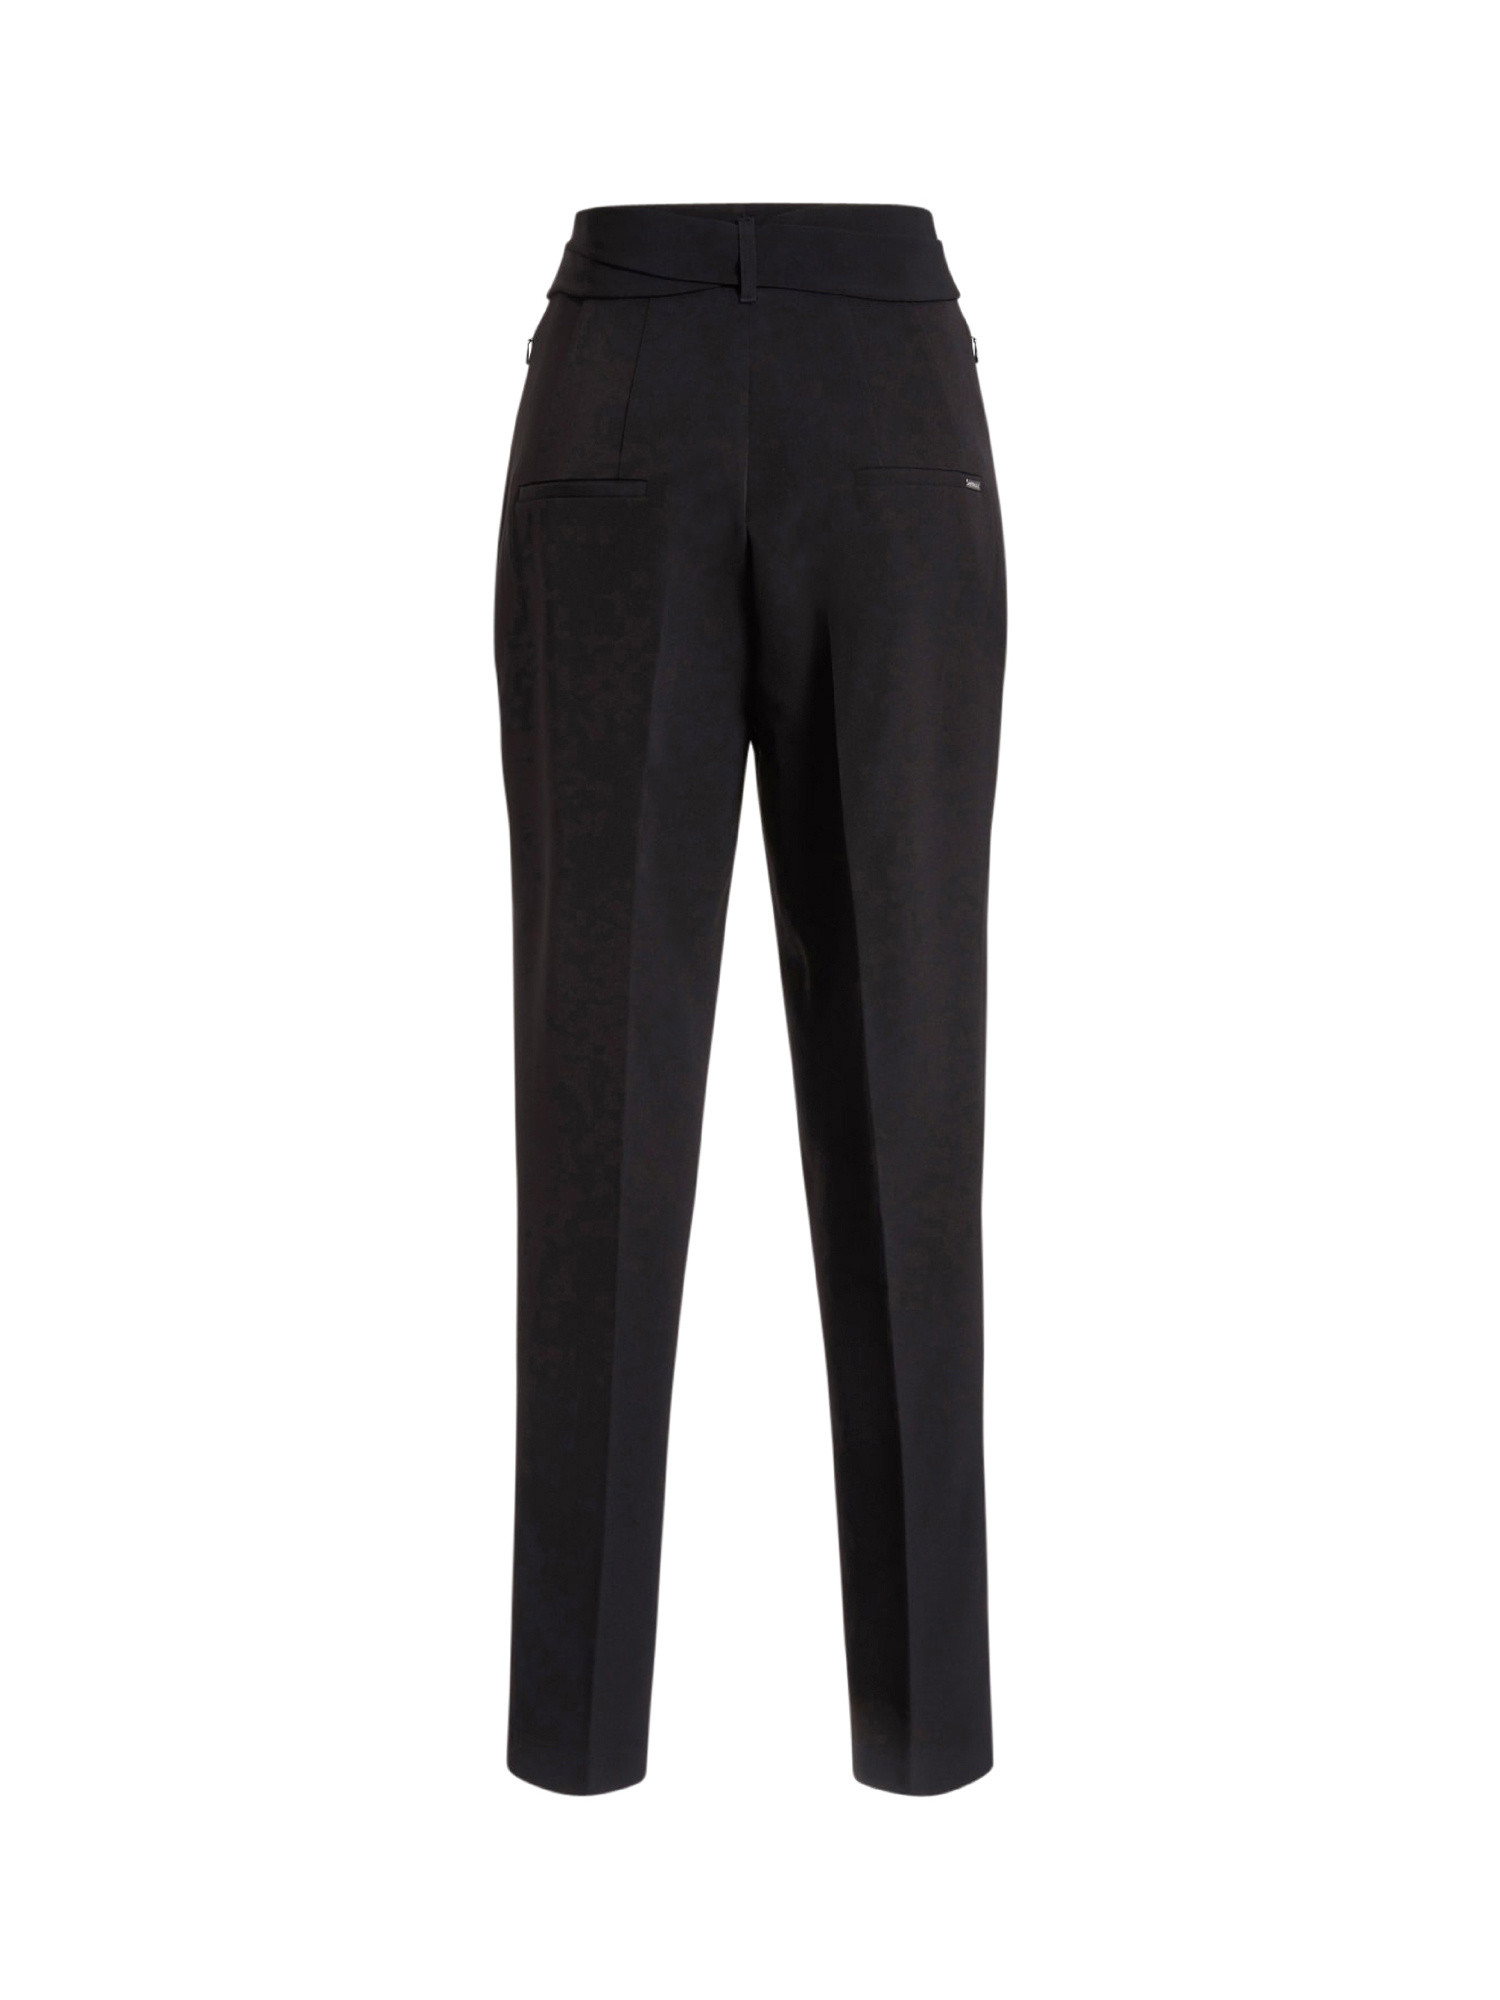 Belted pant, Black, large image number 1